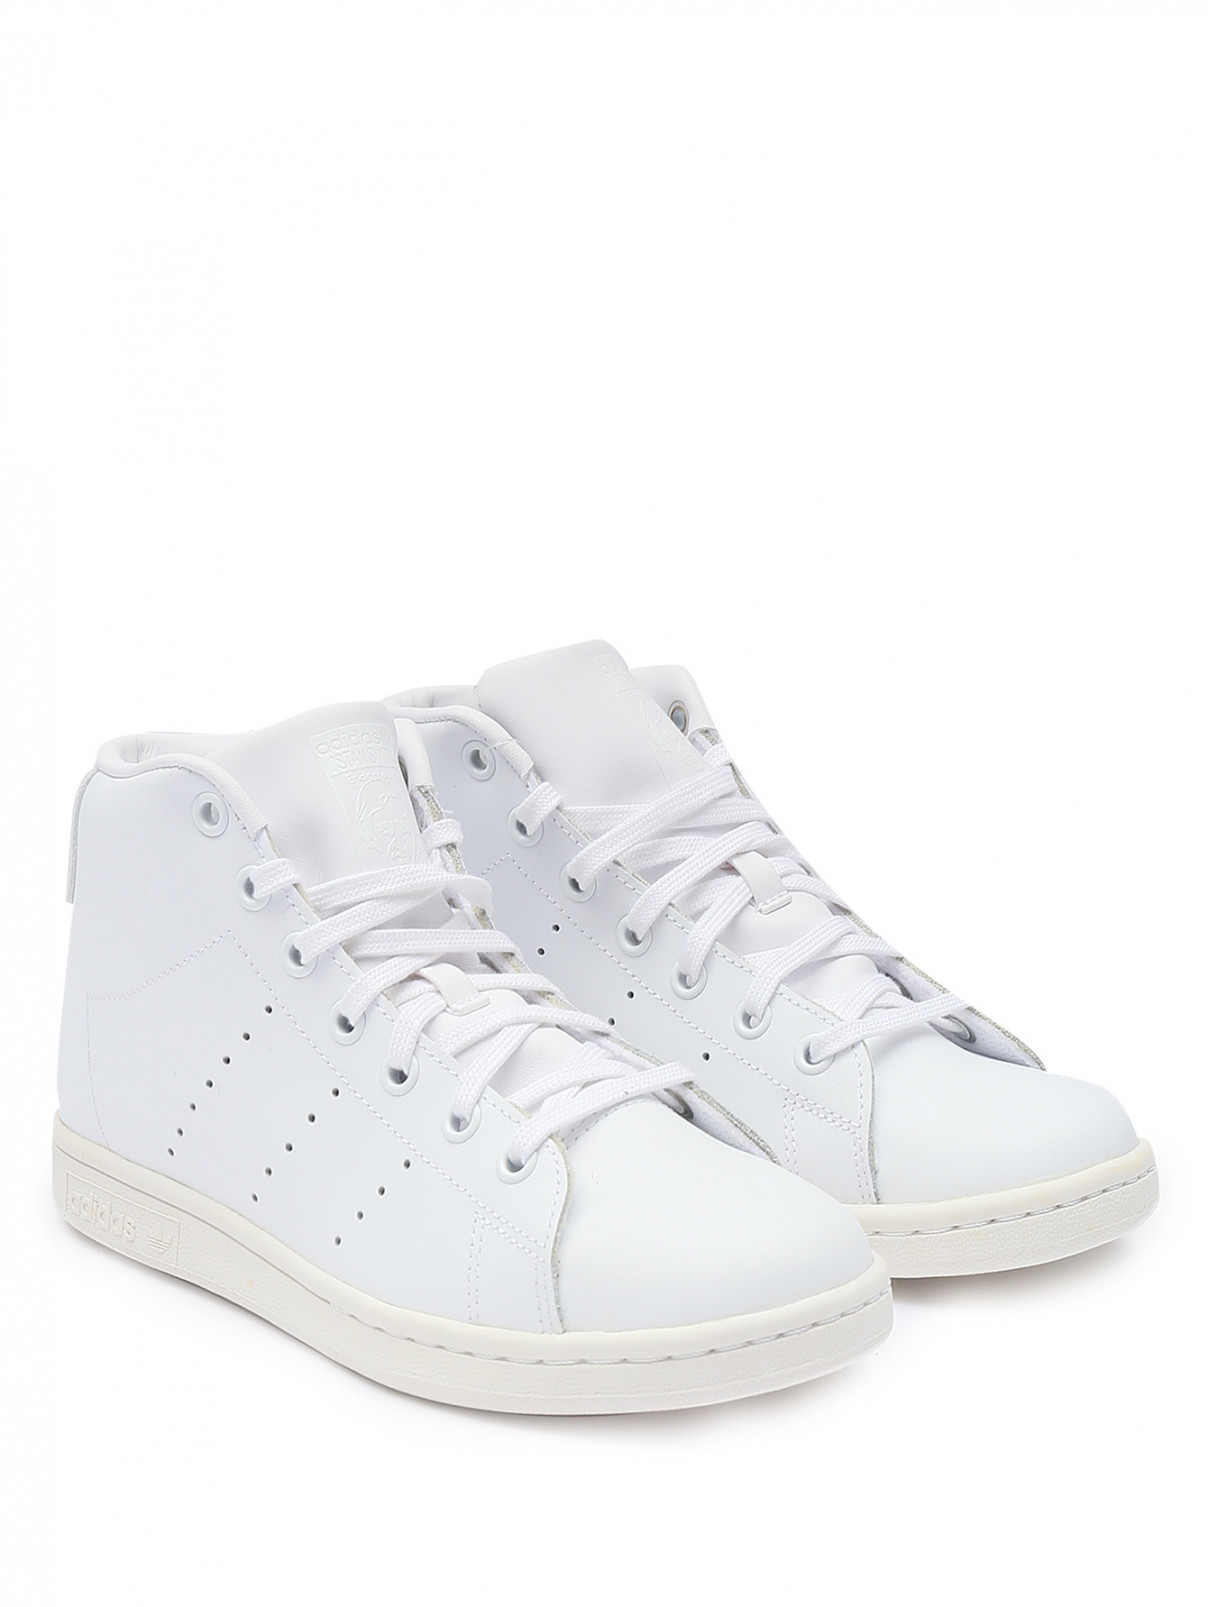 Высокие кеды из кожи на шнурках Adidas Originals  –  Общий вид  – Цвет:  Белый